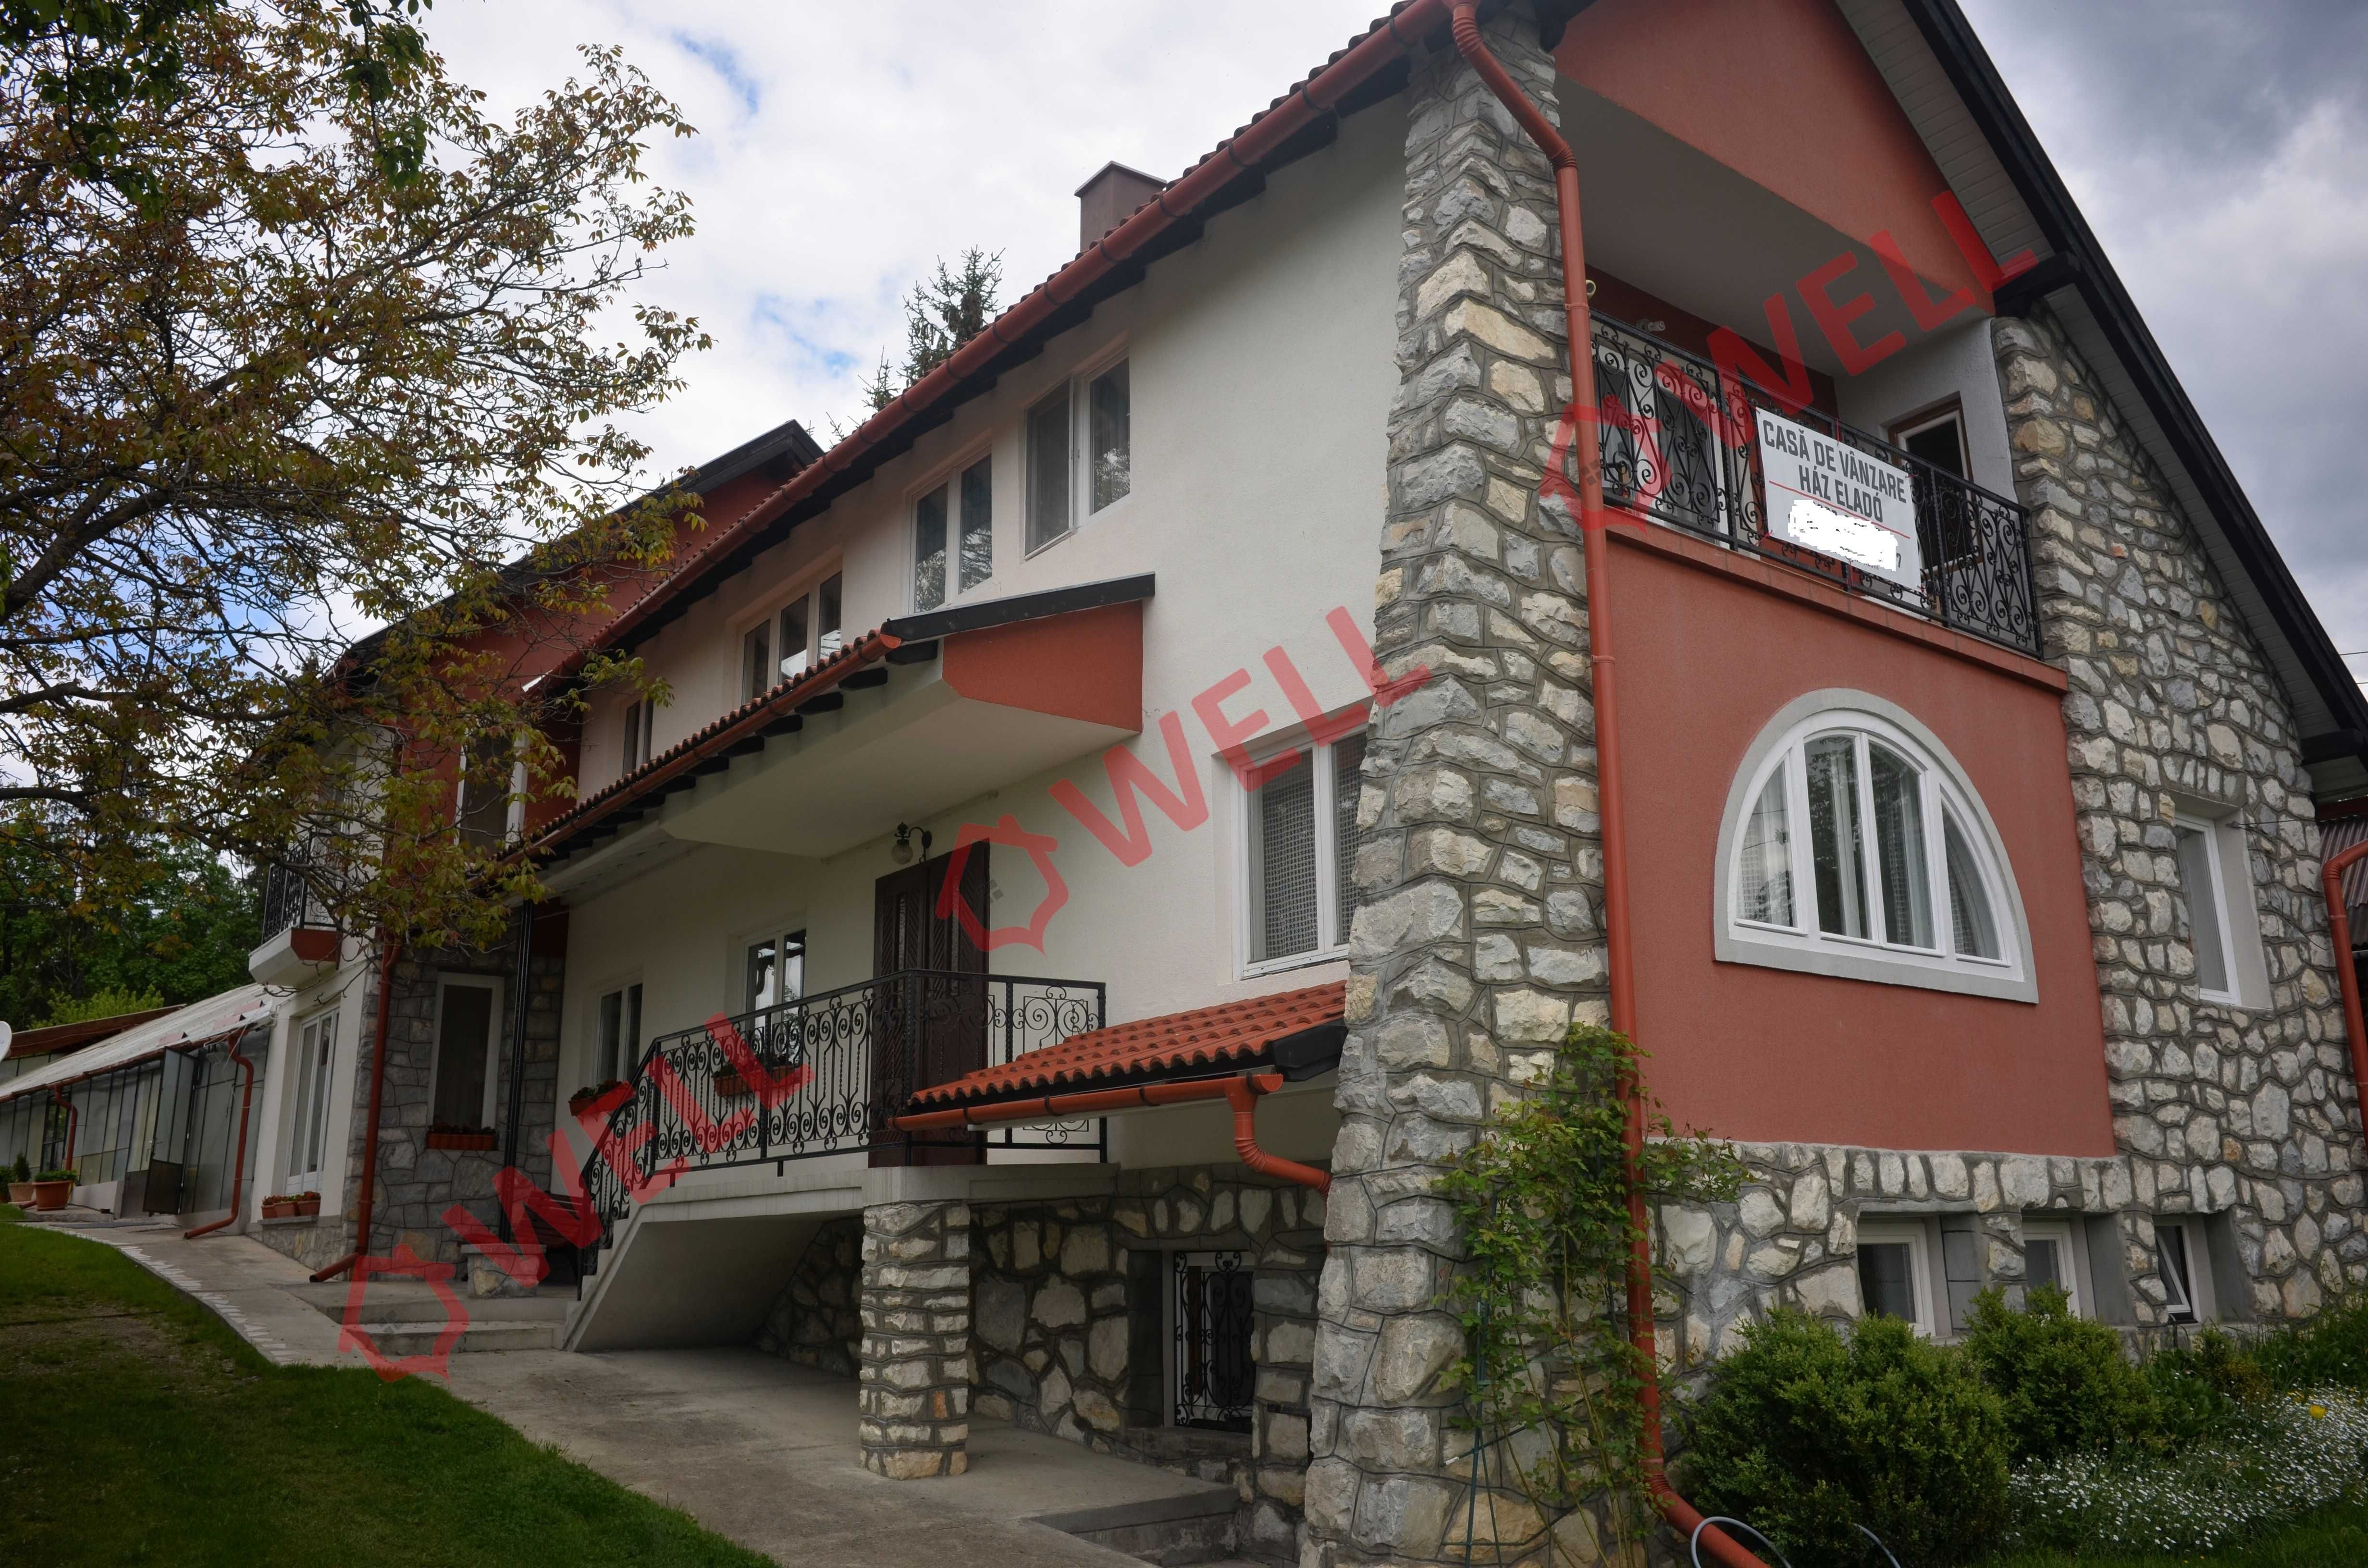 De vânzare în localitatea Izvorul M.– Harghita, o casă familială.